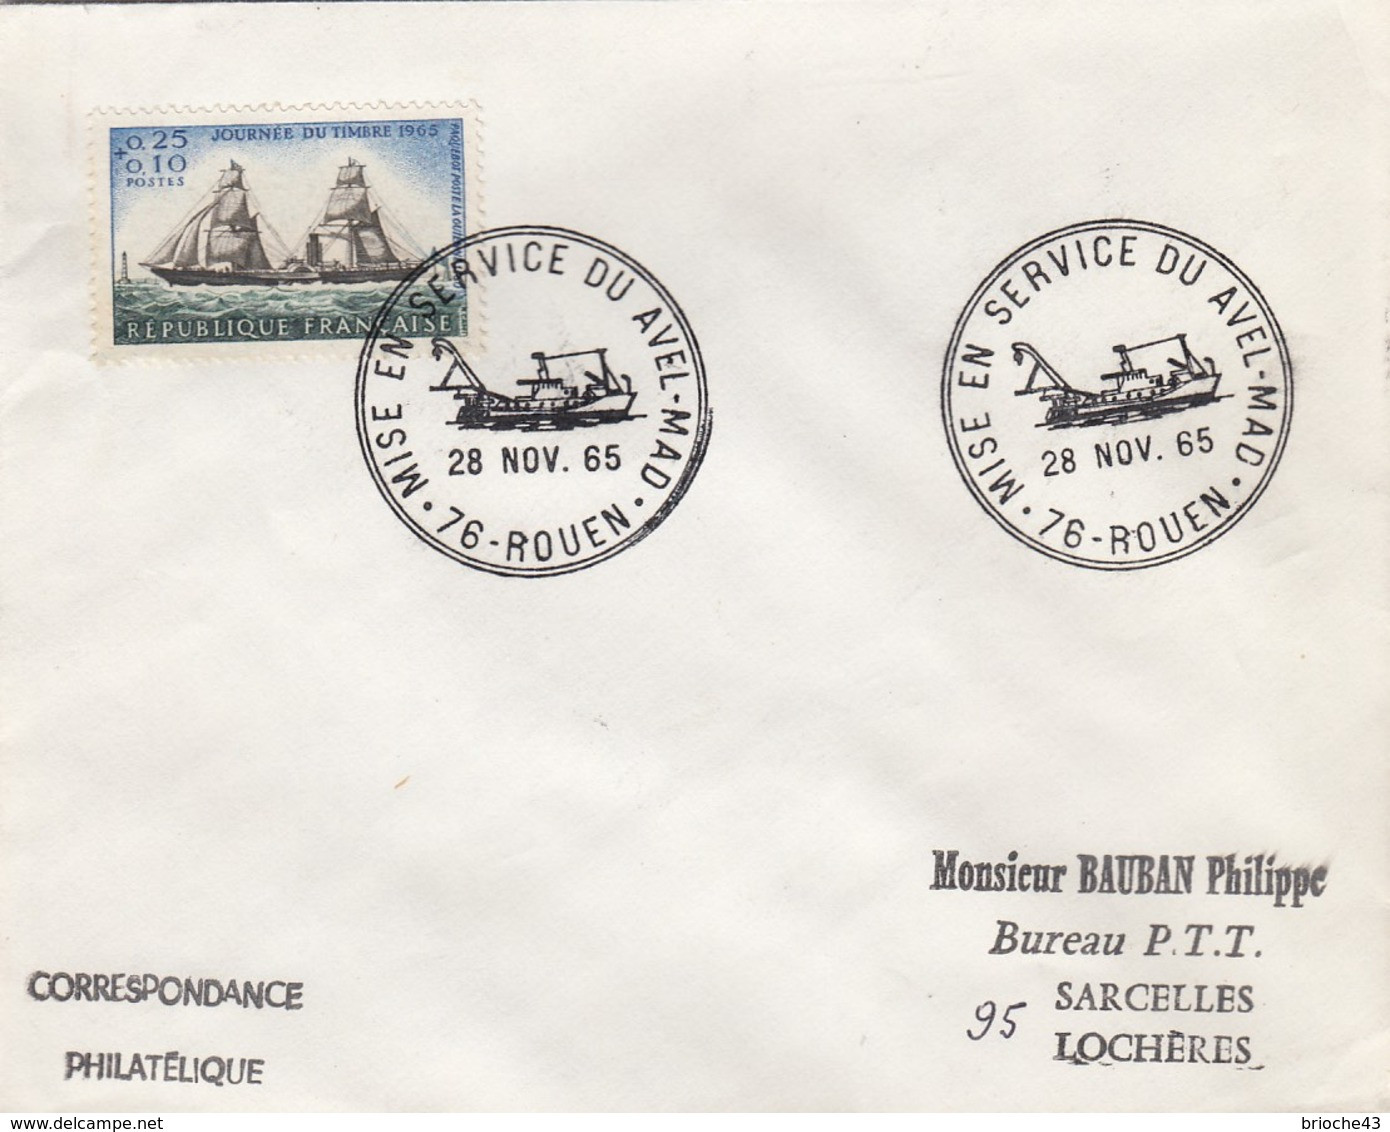 FRANCE - LETTRE JOURNEE TIMBRE 1965   - CACHET ROND MISE EN SERVICE DU AVEL-MAD 28.11.65 ROUEN 76 + VERSO  / 6907 - Cartas & Documentos